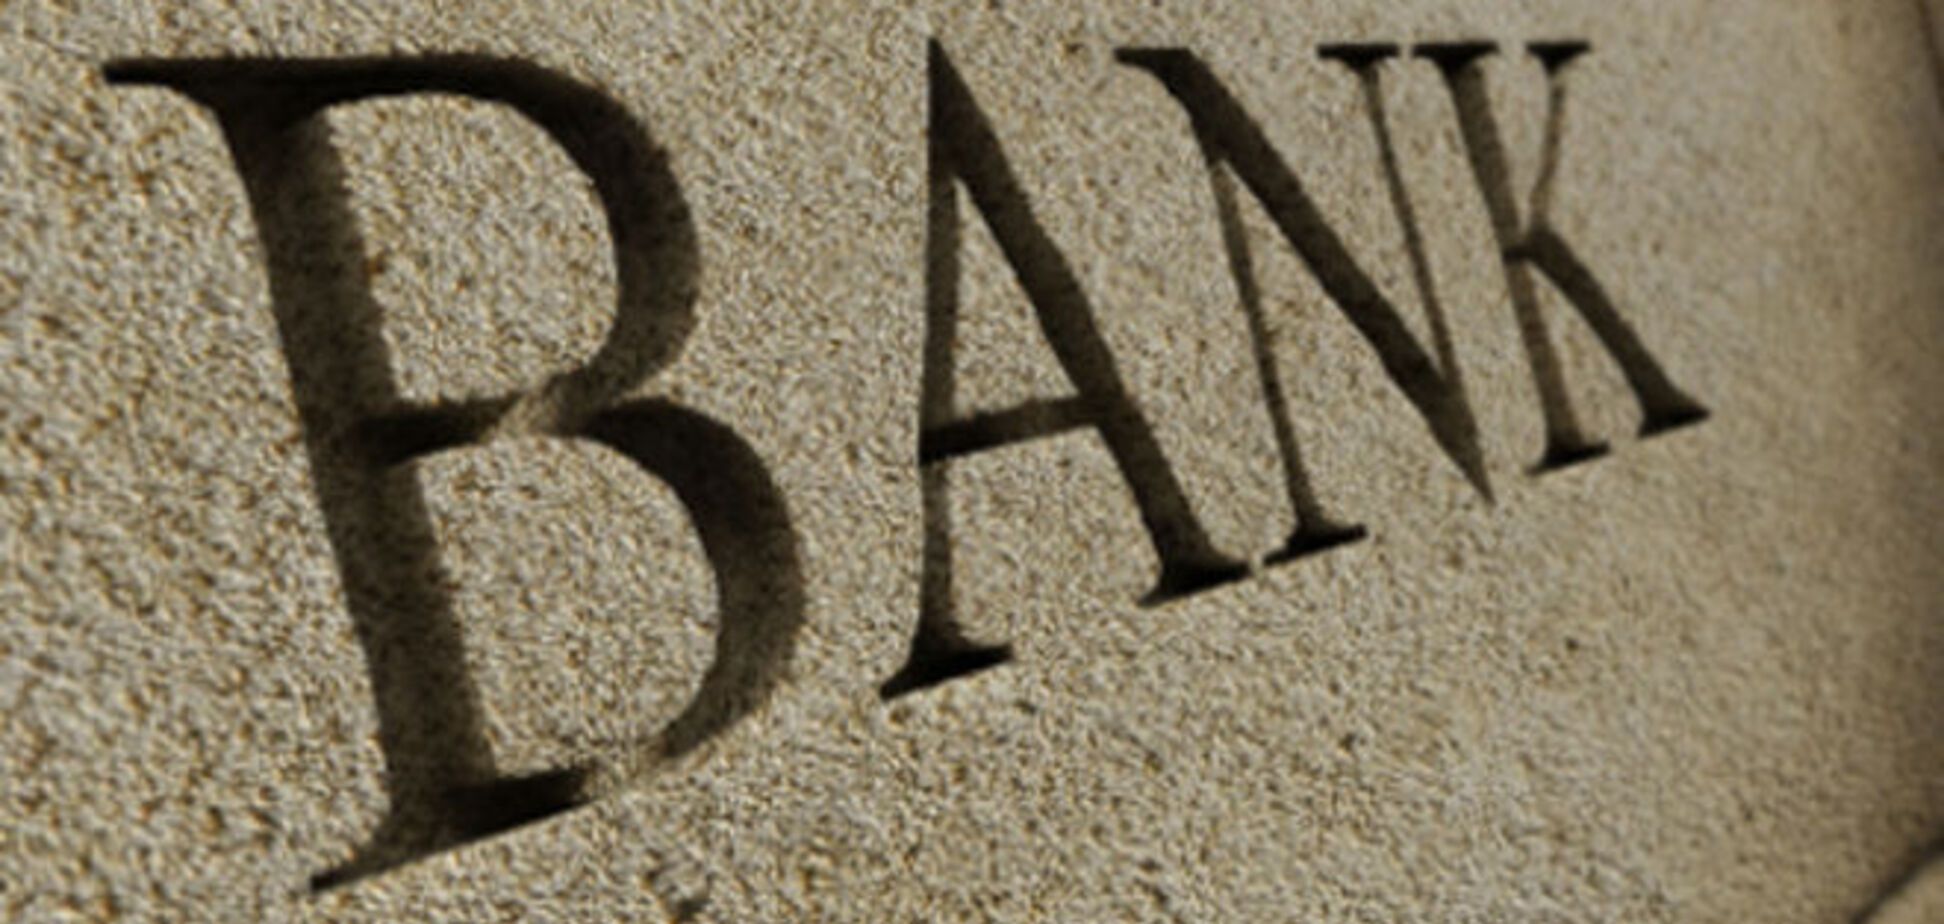 Пять крупнейших банков мира оштрафованы за манипуляции на валютных рынках